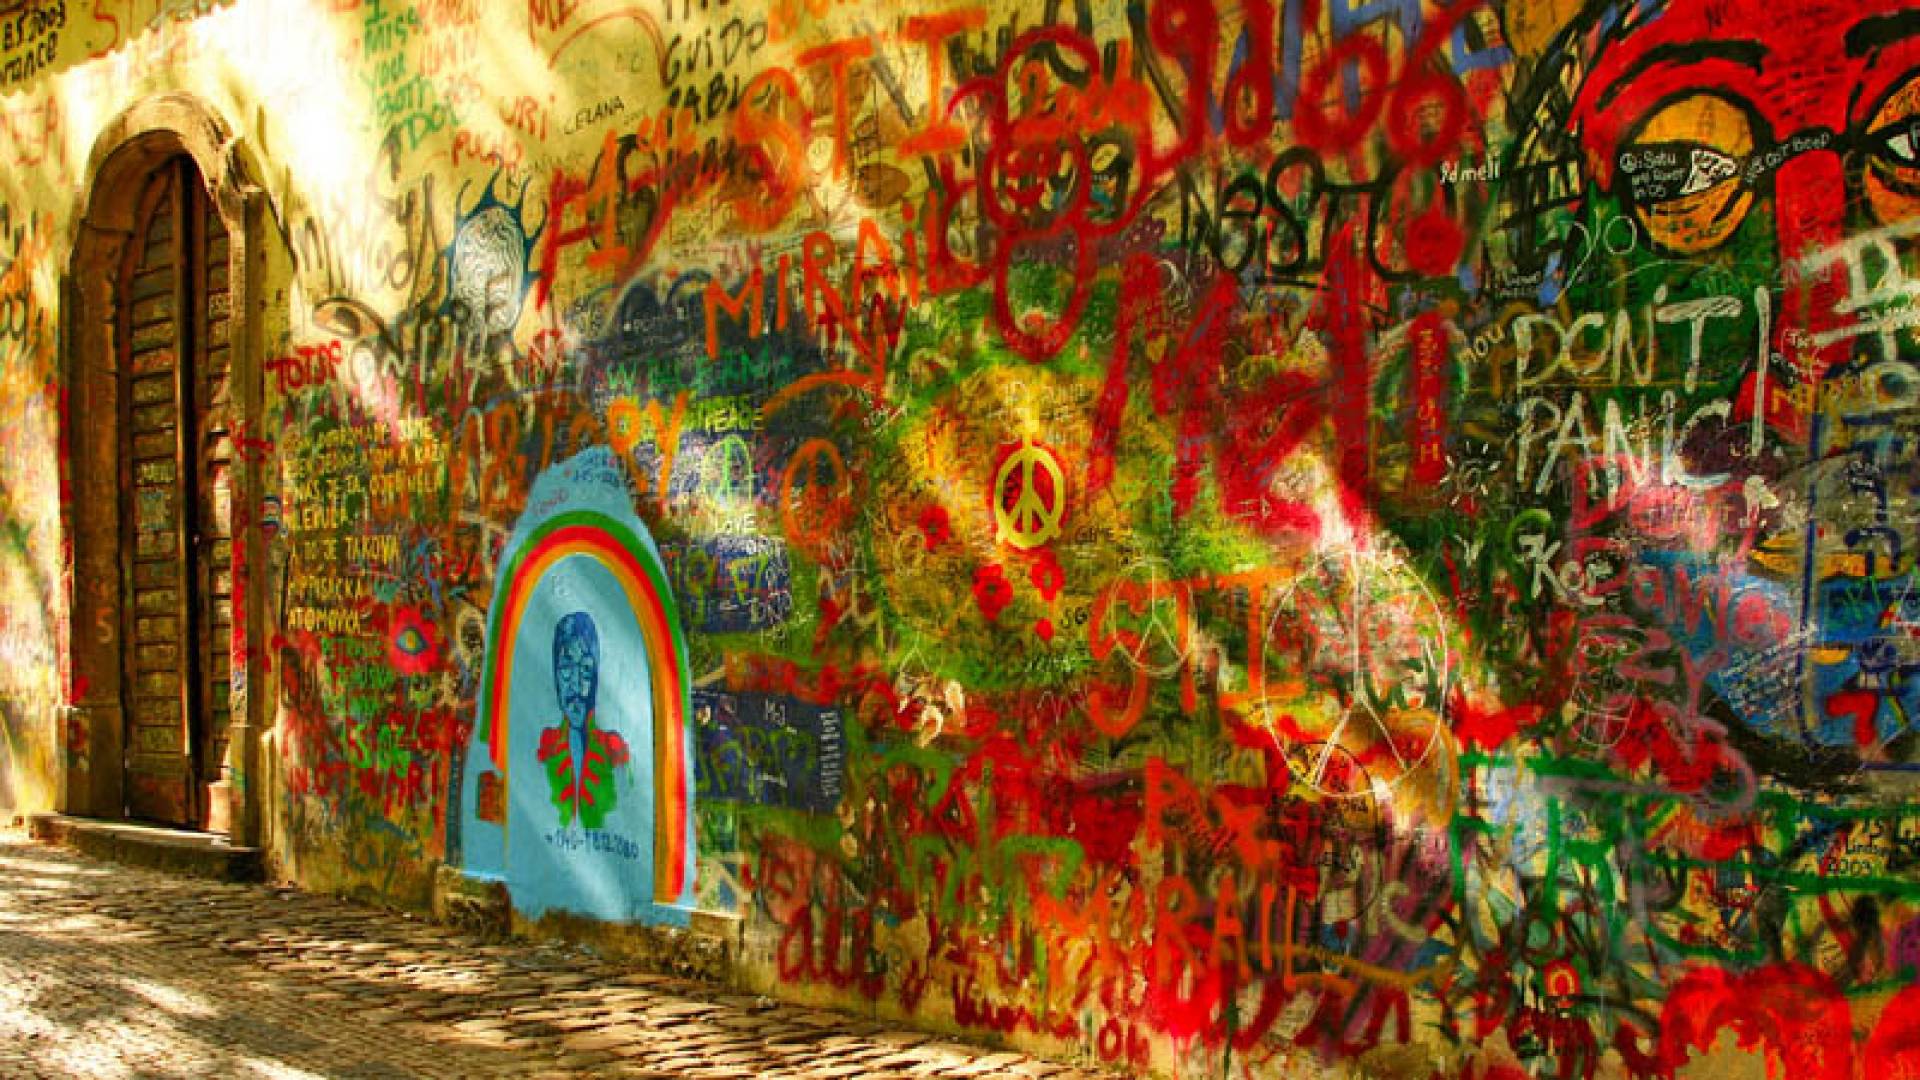 MALA STRANA, Lennon Wall